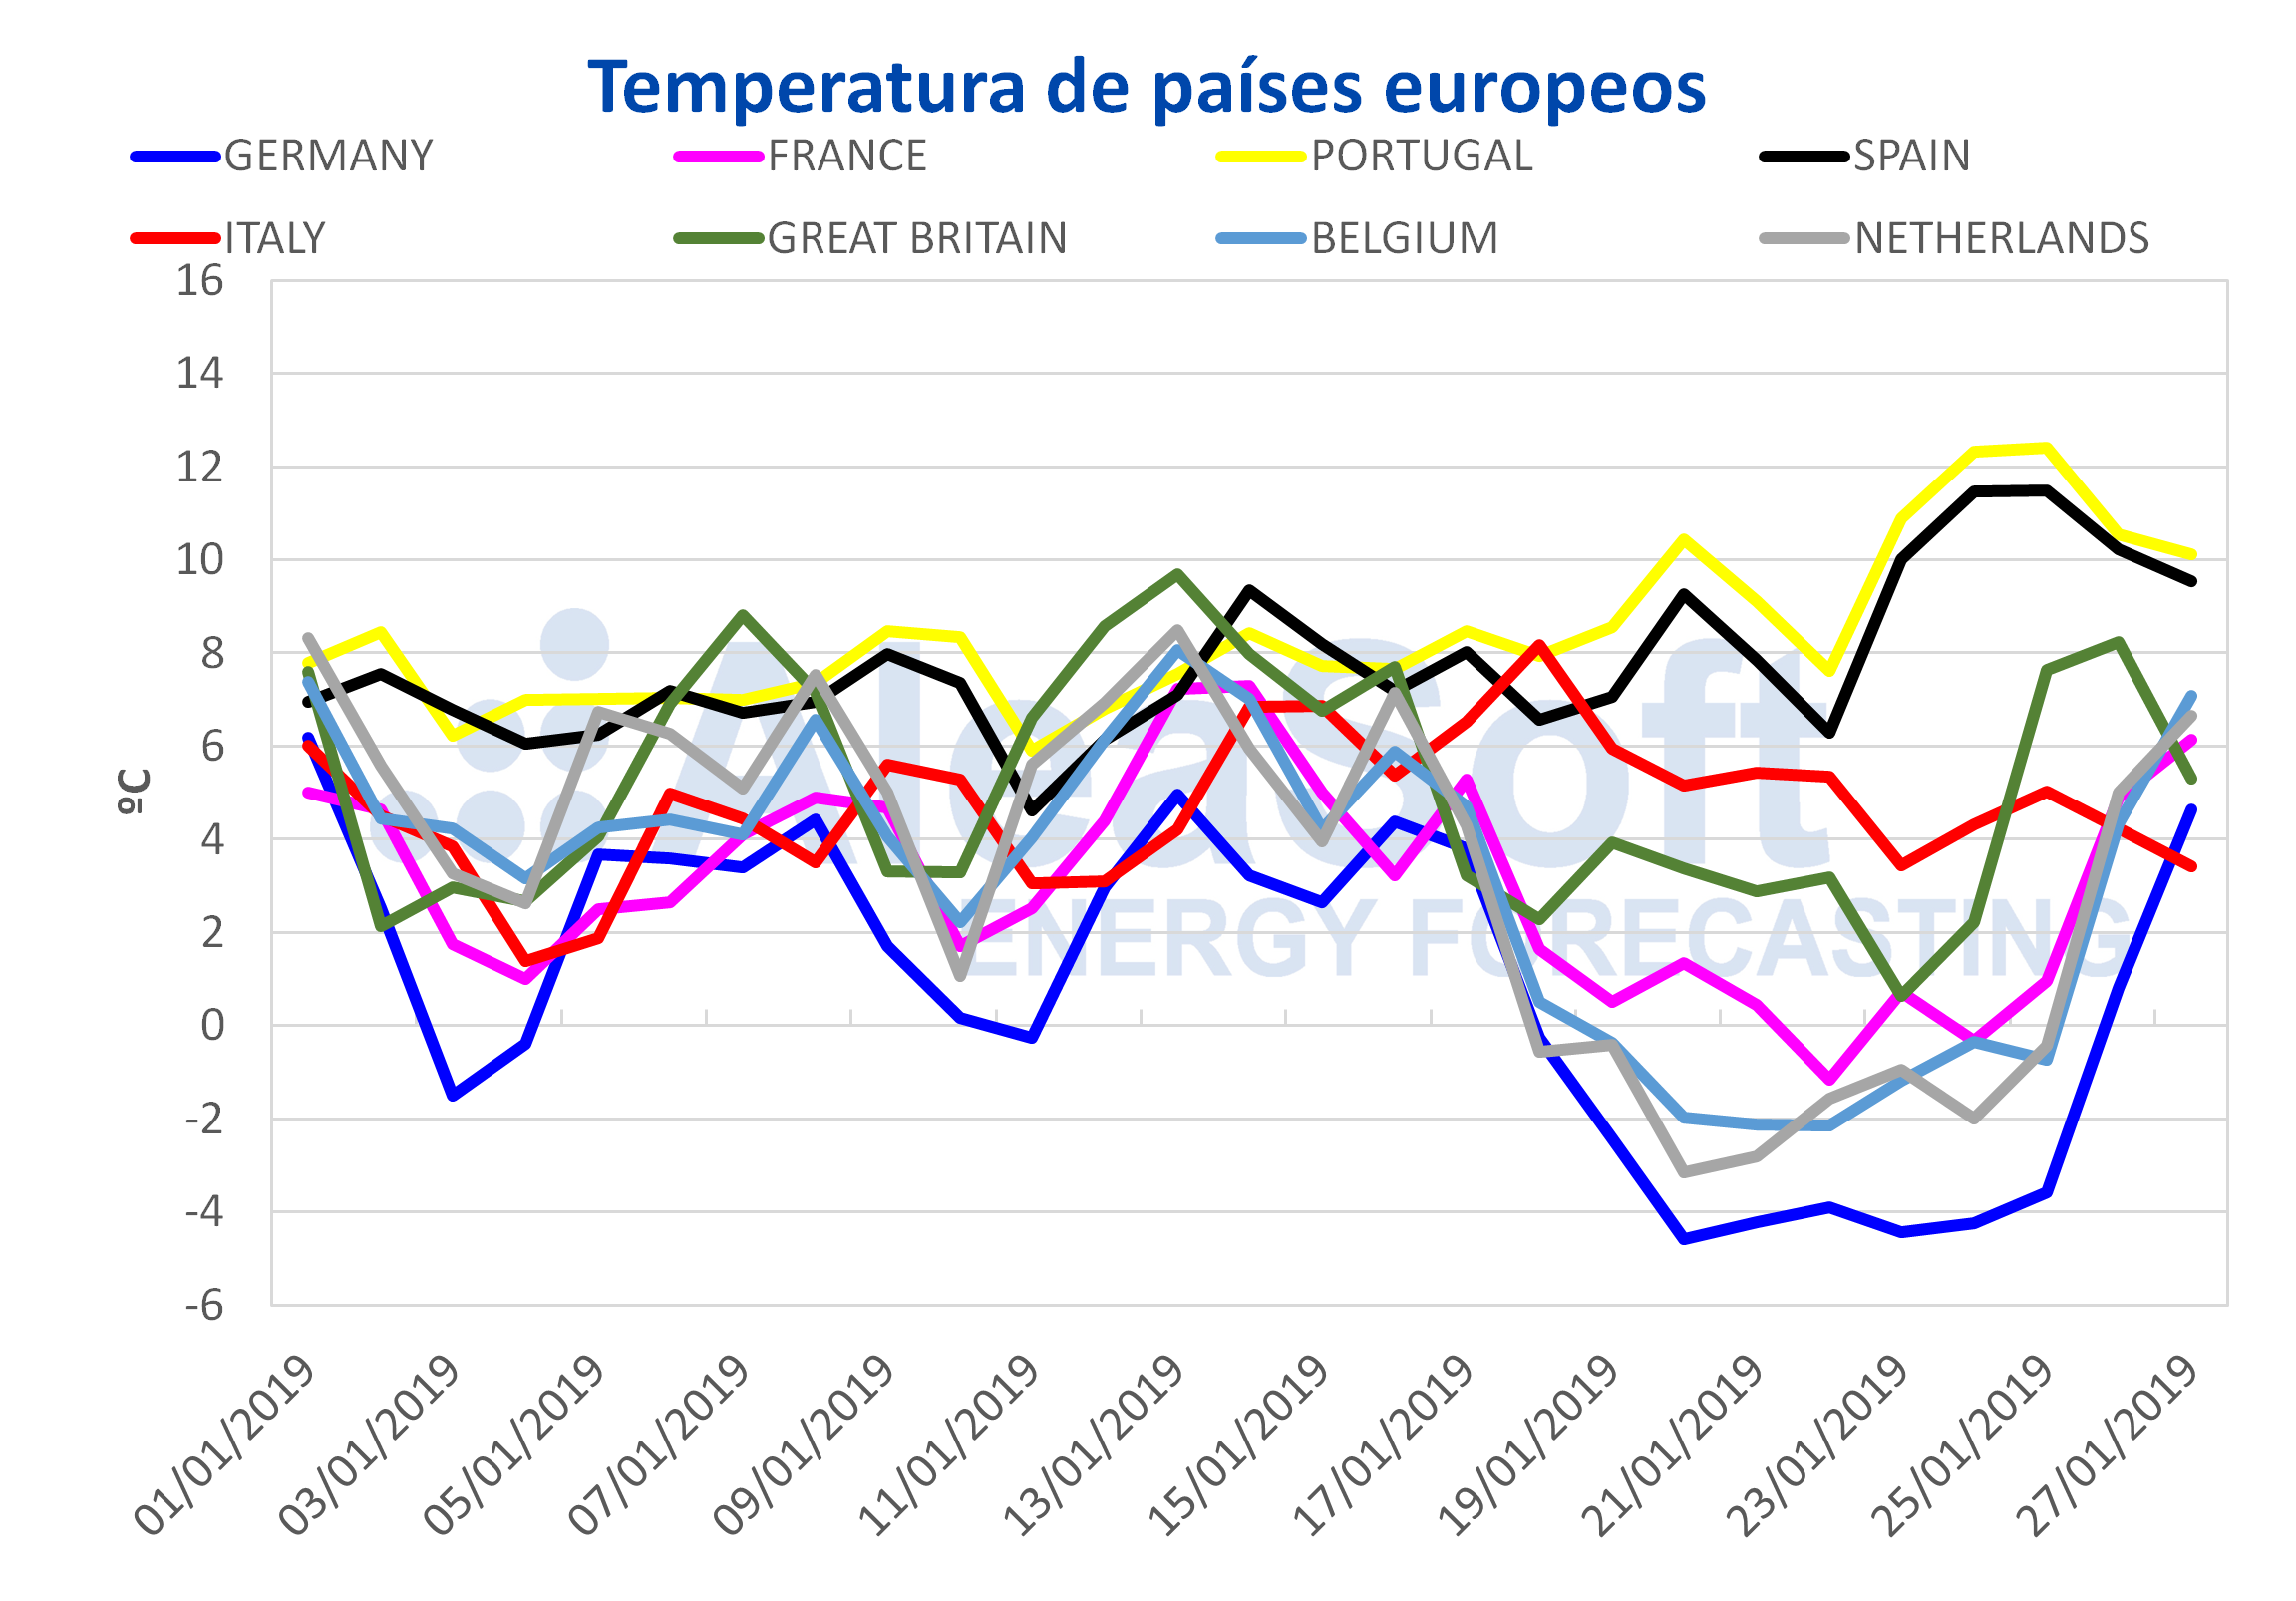 AleaSoft - Temperatura en países europeos